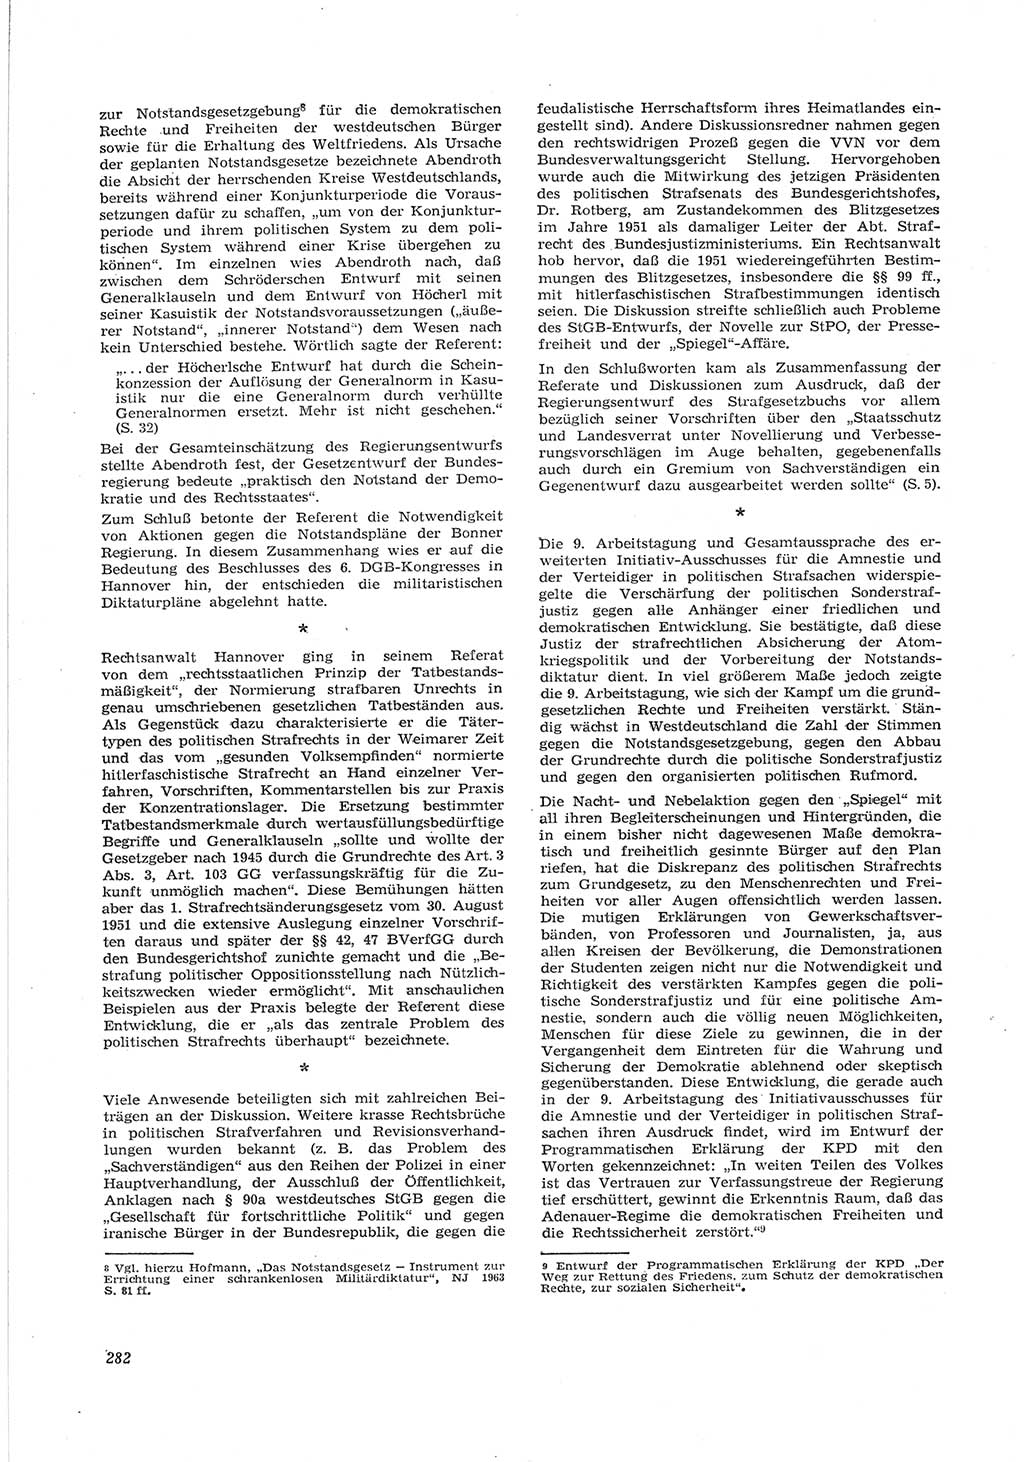 Neue Justiz (NJ), Zeitschrift für Recht und Rechtswissenschaft [Deutsche Demokratische Republik (DDR)], 17. Jahrgang 1963, Seite 282 (NJ DDR 1963, S. 282)